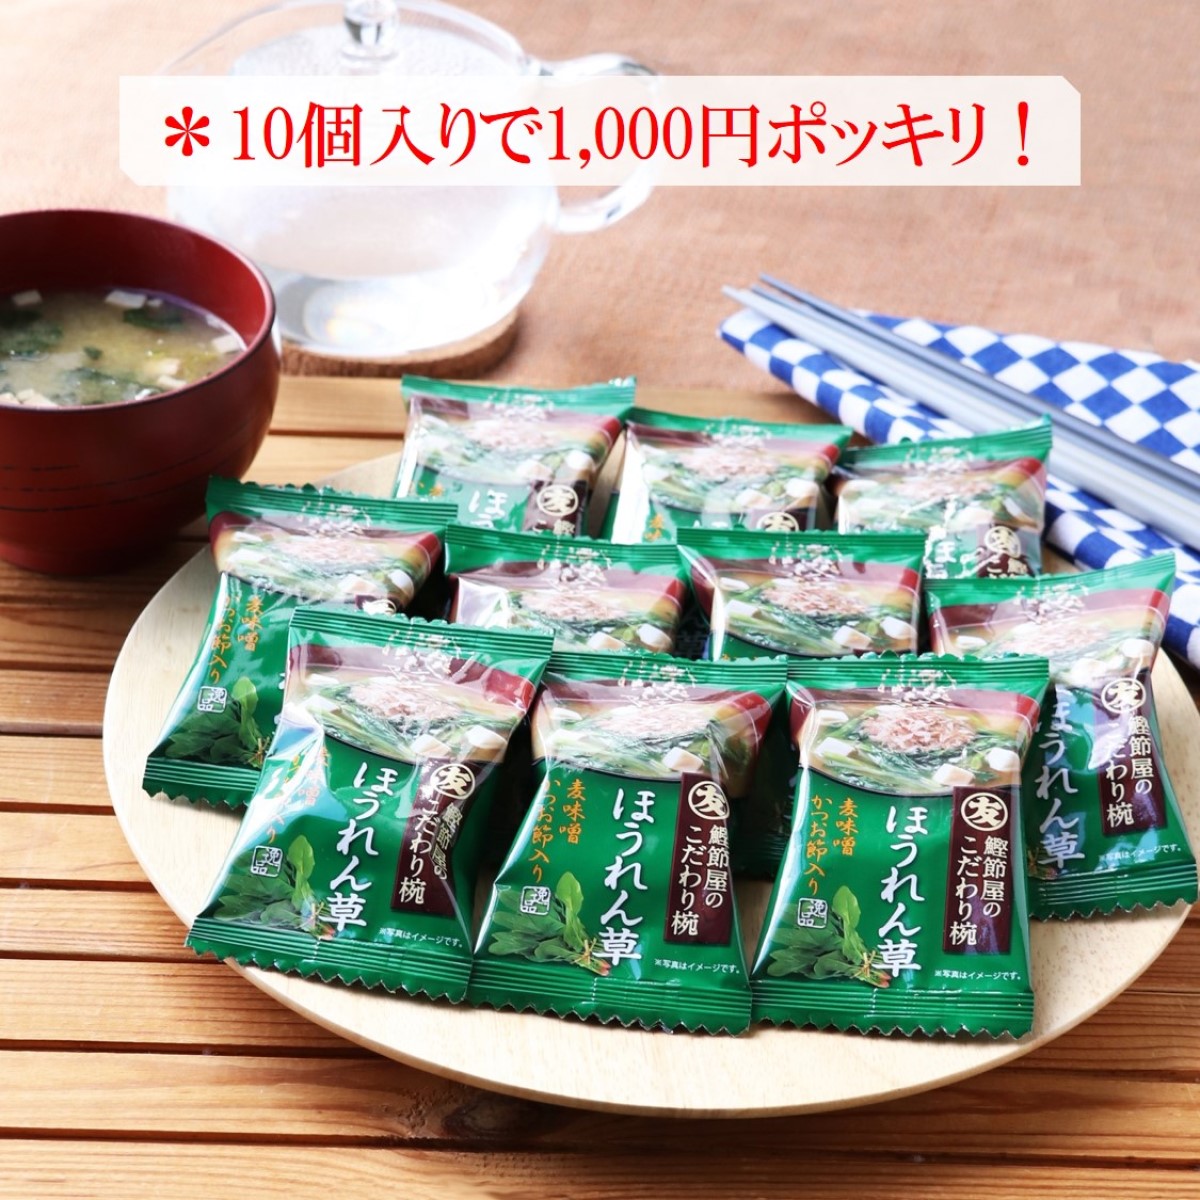 【送料無料/メール便】マルトモフリーズドライほうれん草のみそ汁10個セットは1,000円ポッキリ